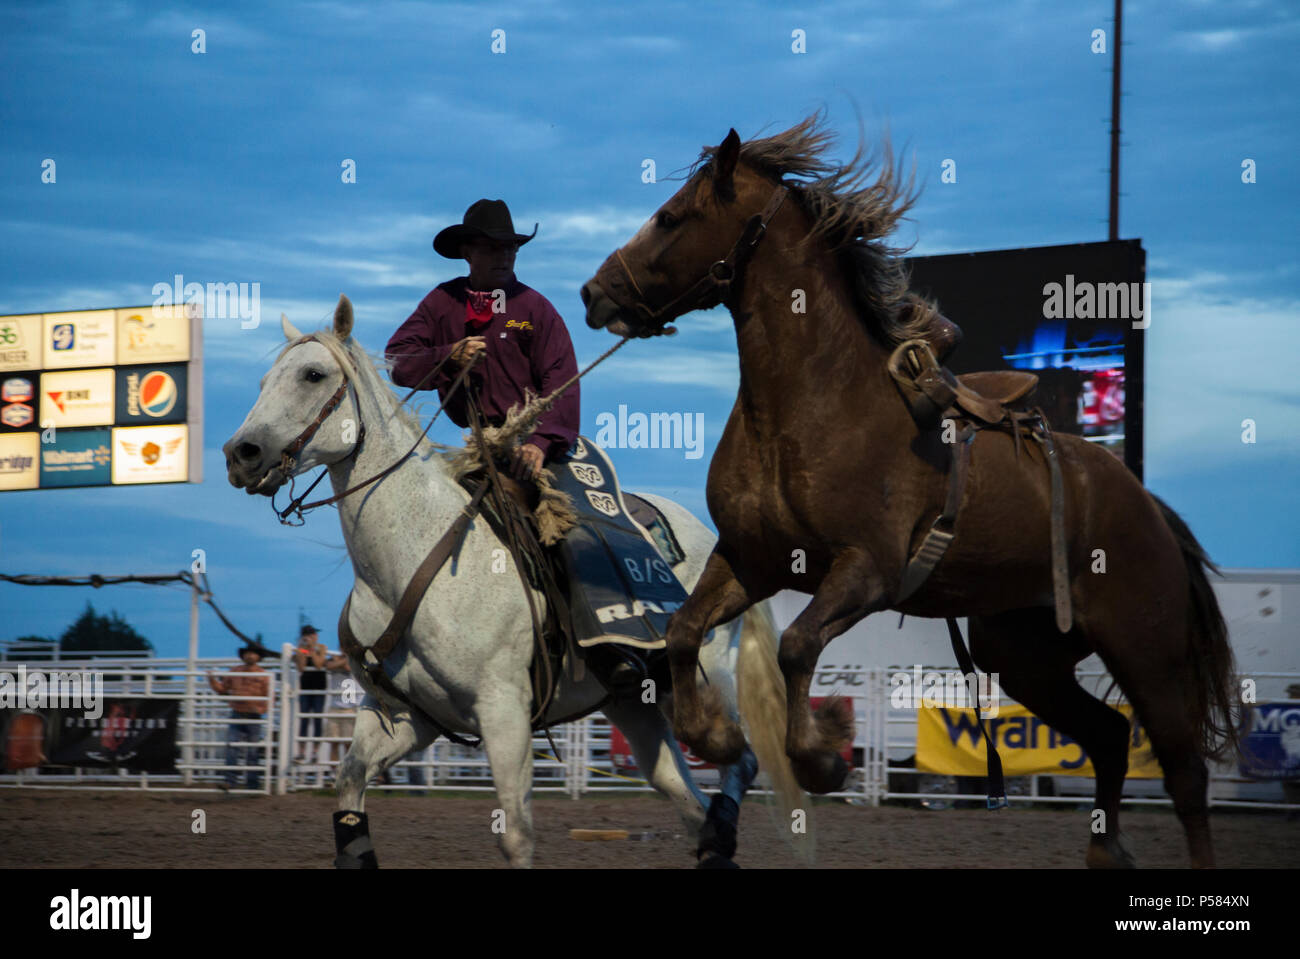 Un cowboy insegue giù a perdere il cavallo durante i giorni Nebraskaland Rodeo in North Platte, NE IL 16 GIUGNO 2018. Foto Stock